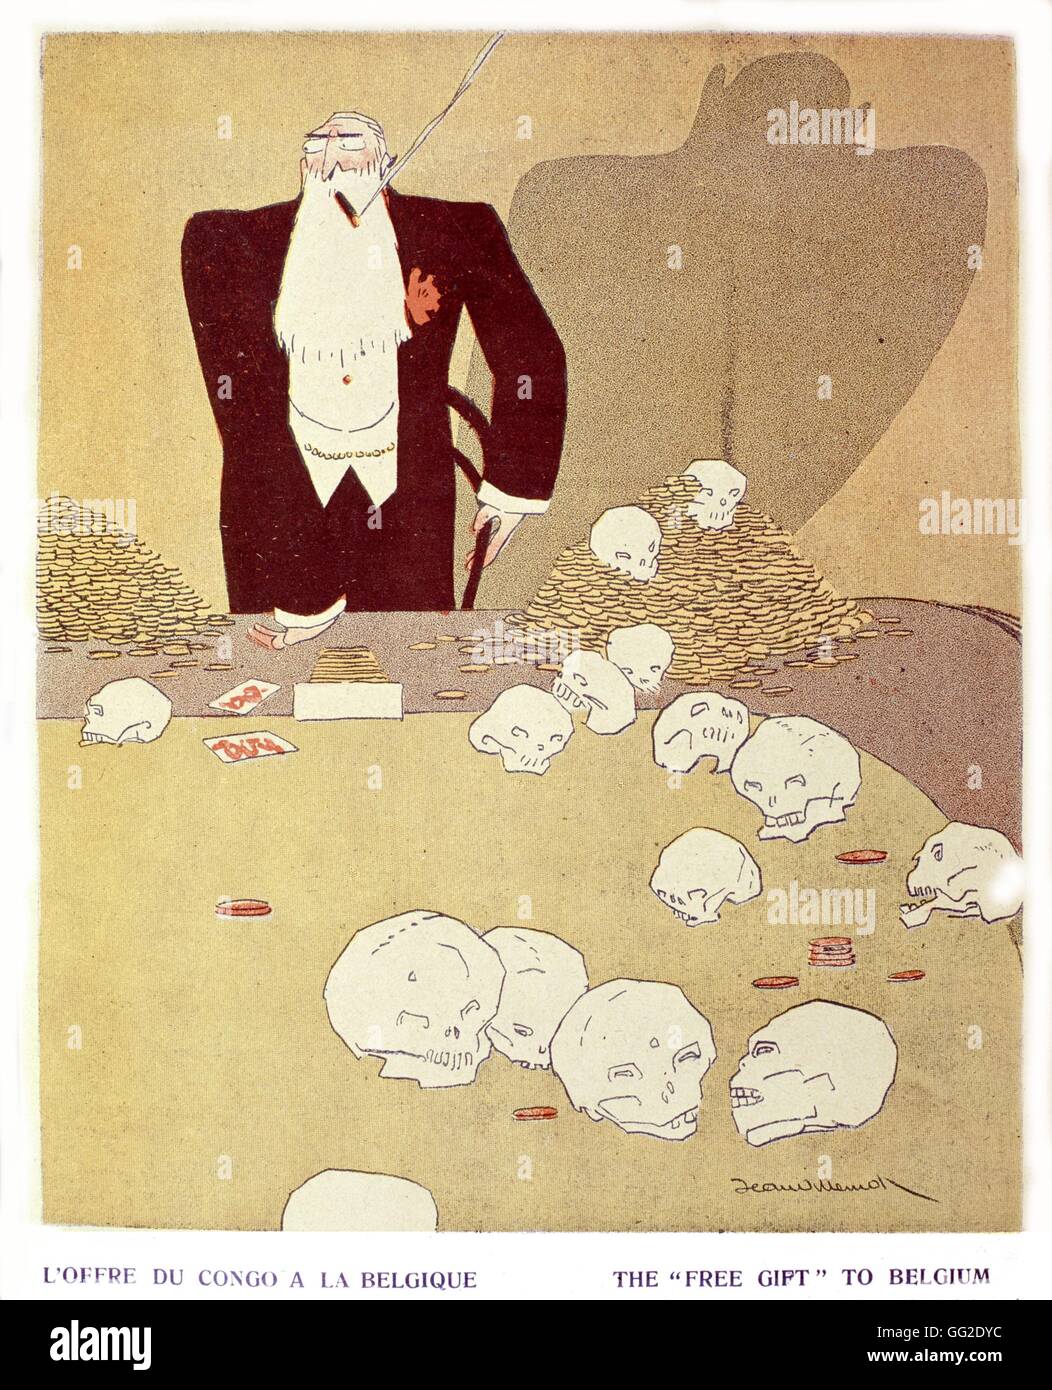 Karikatur über Leopold II., König der Belgier, über seine Politik im Kongo. Belgien - Kolonisierung Private Sammlung Stockfoto